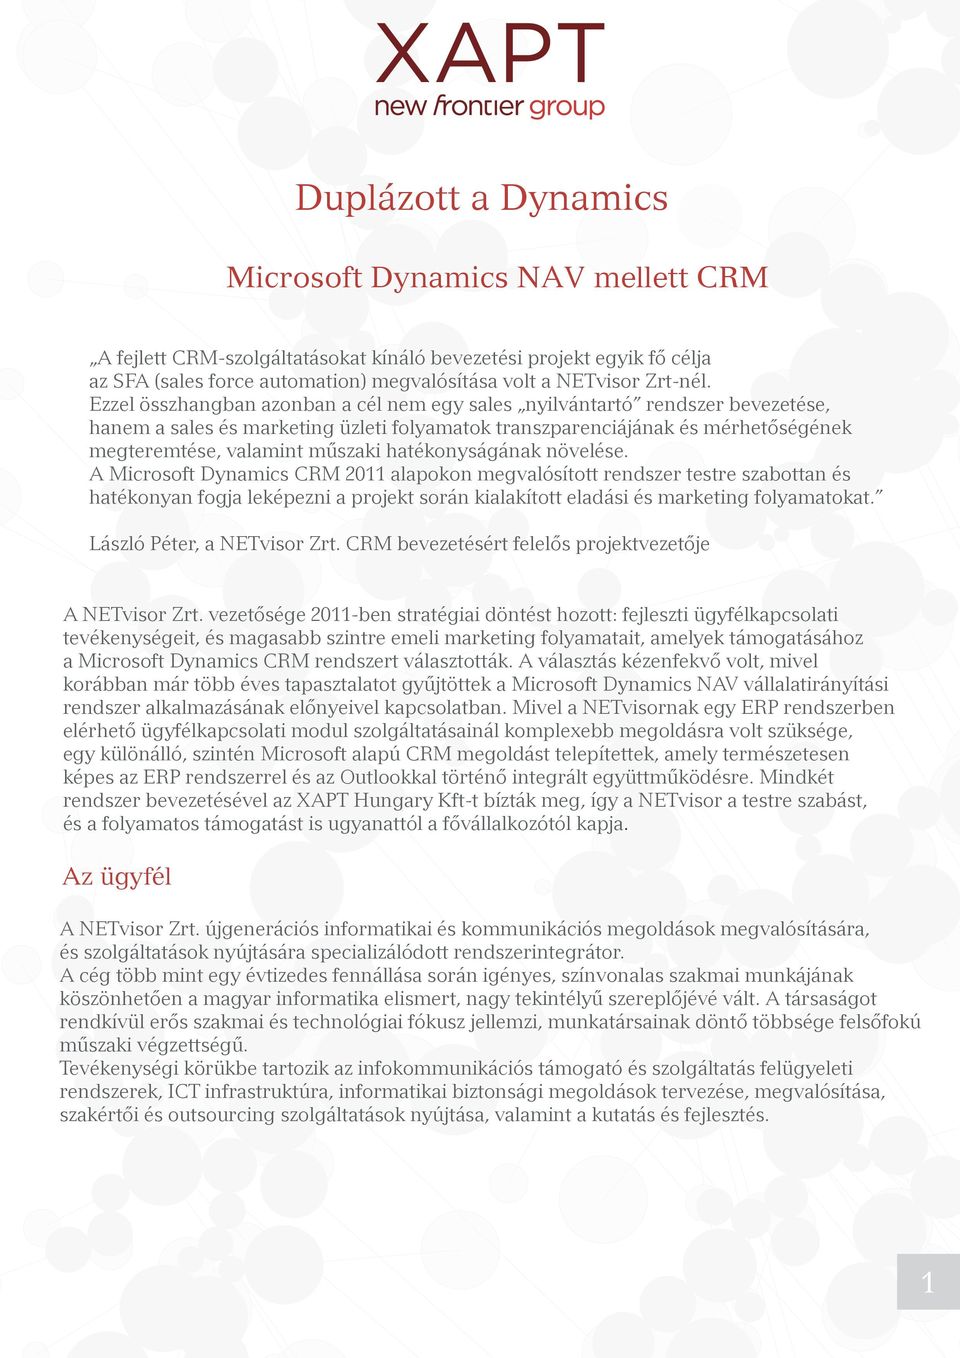 hatékonyságának növelése. A Microsoft Dynamics CRM 2011 alapokon megvalósított rendszer testre szabottan és hatékonyan fogja leképezni a projekt során kialakított eladási és marketing folyamatokat.